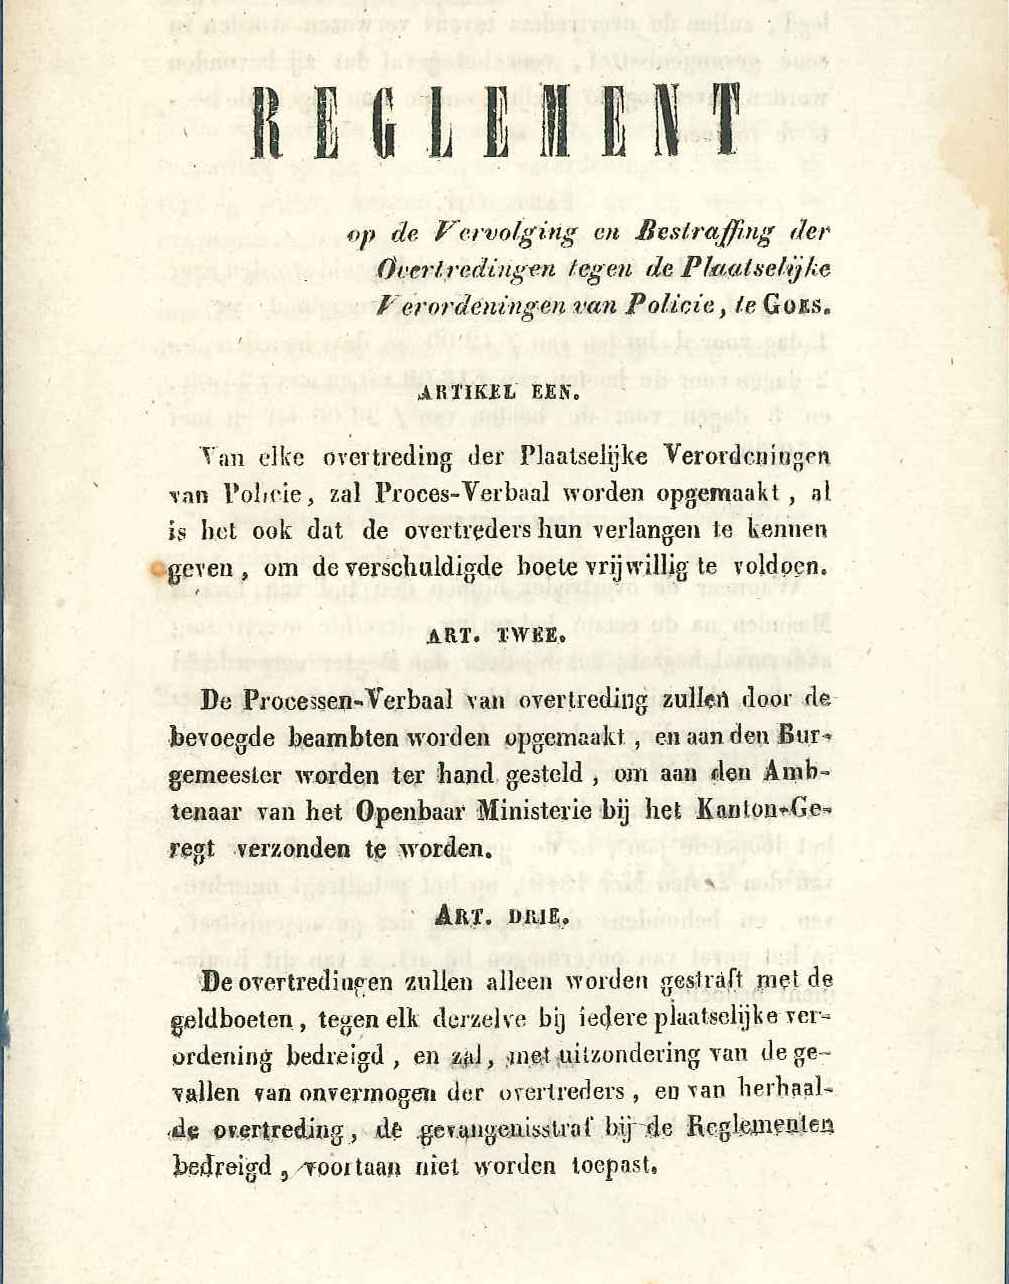 Reglement op de straffen bij overtreding van verordeningen, 1844. GAG.ASG. inv.nr. 1847.